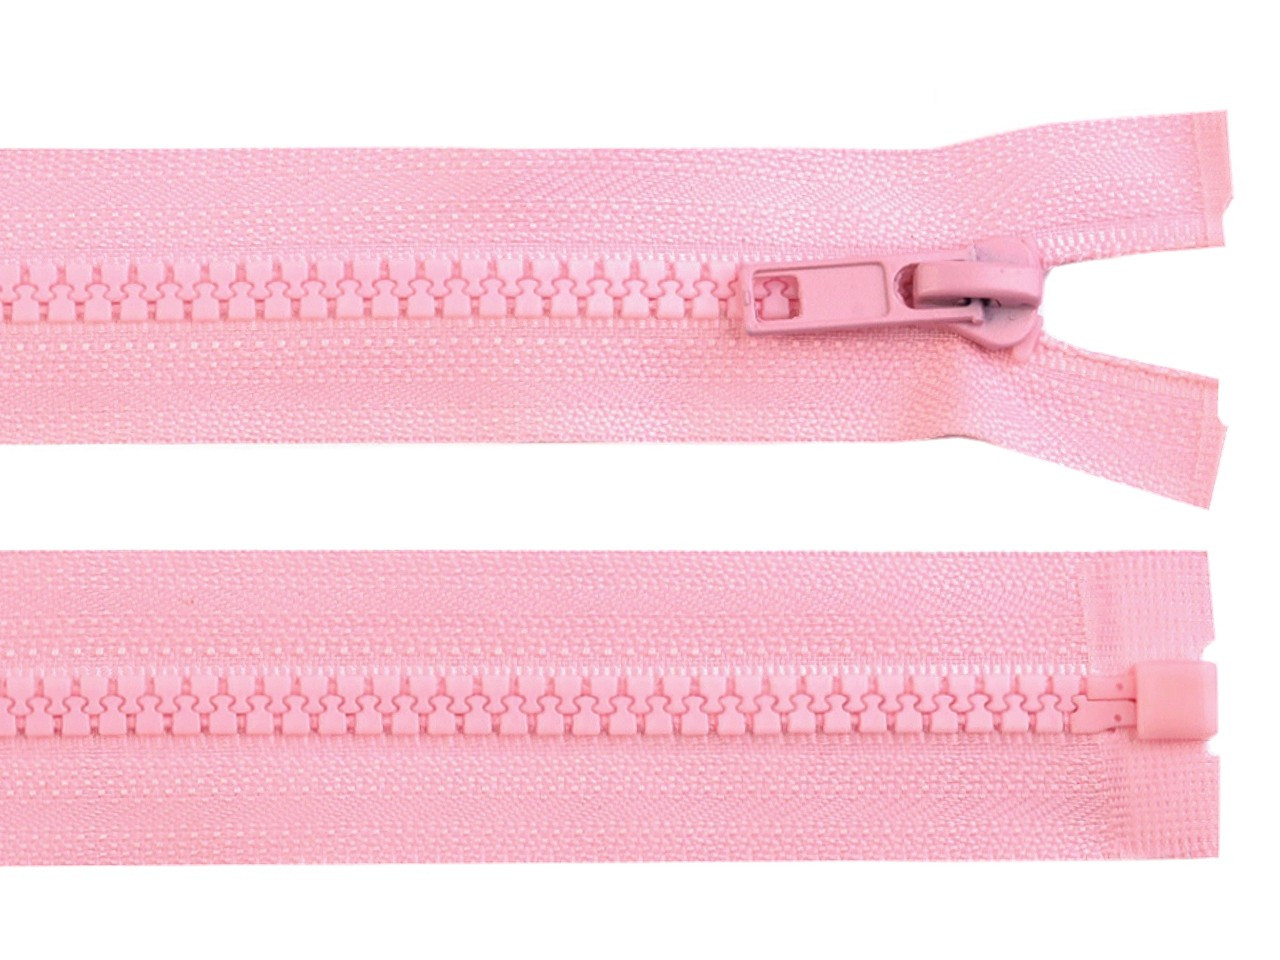 Kostěný zip No 5 délka 65 cm bundový, barva 134 růžová dětská světlá